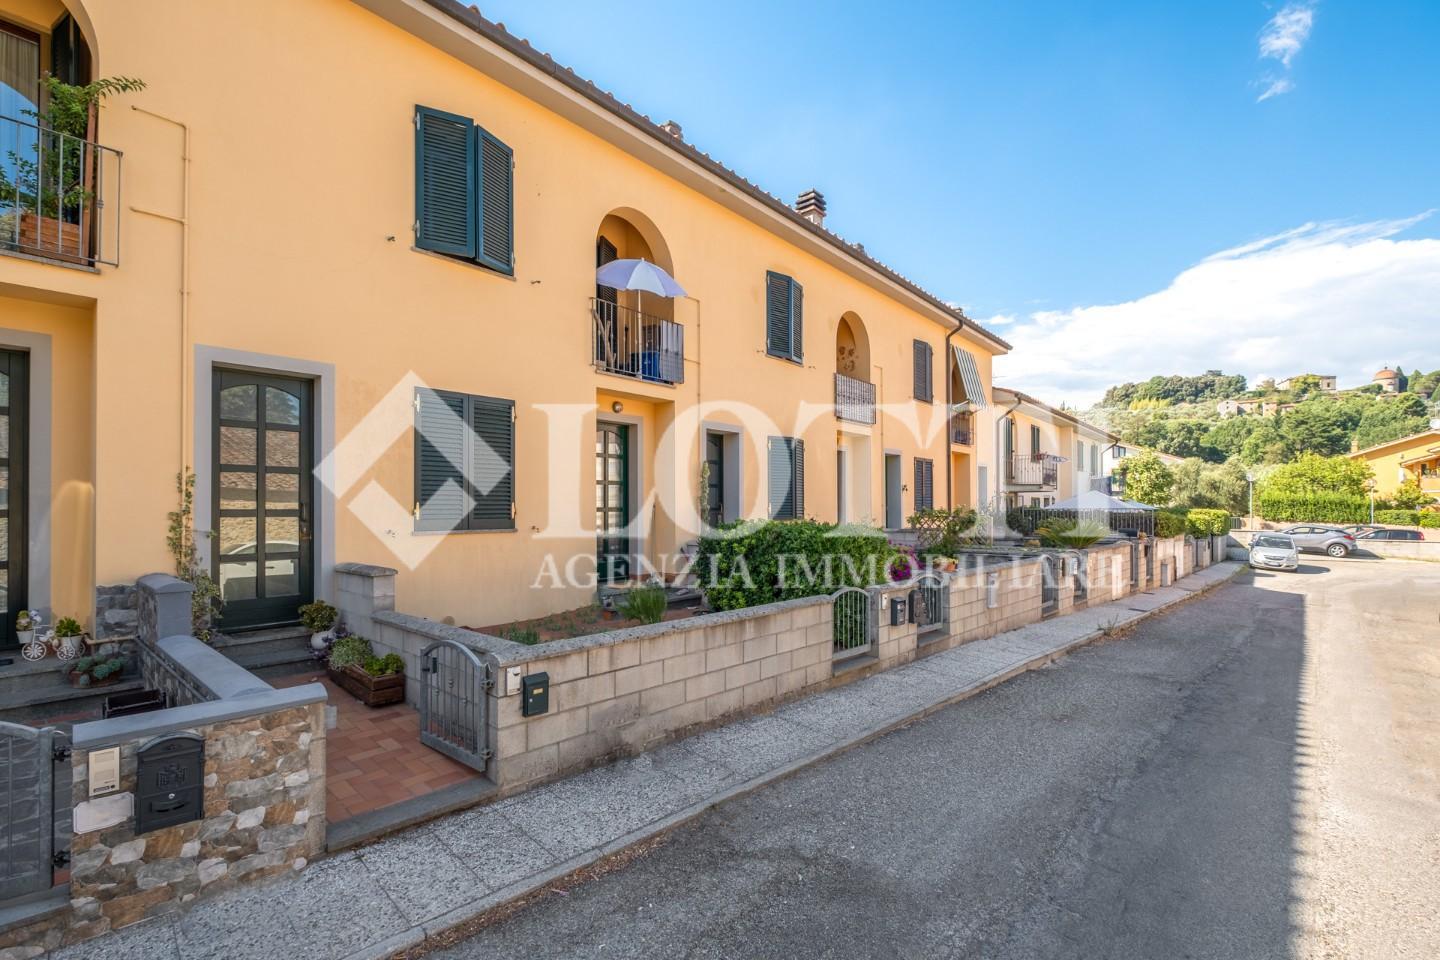 Apartment for sale in La Croce, Buti (PI)